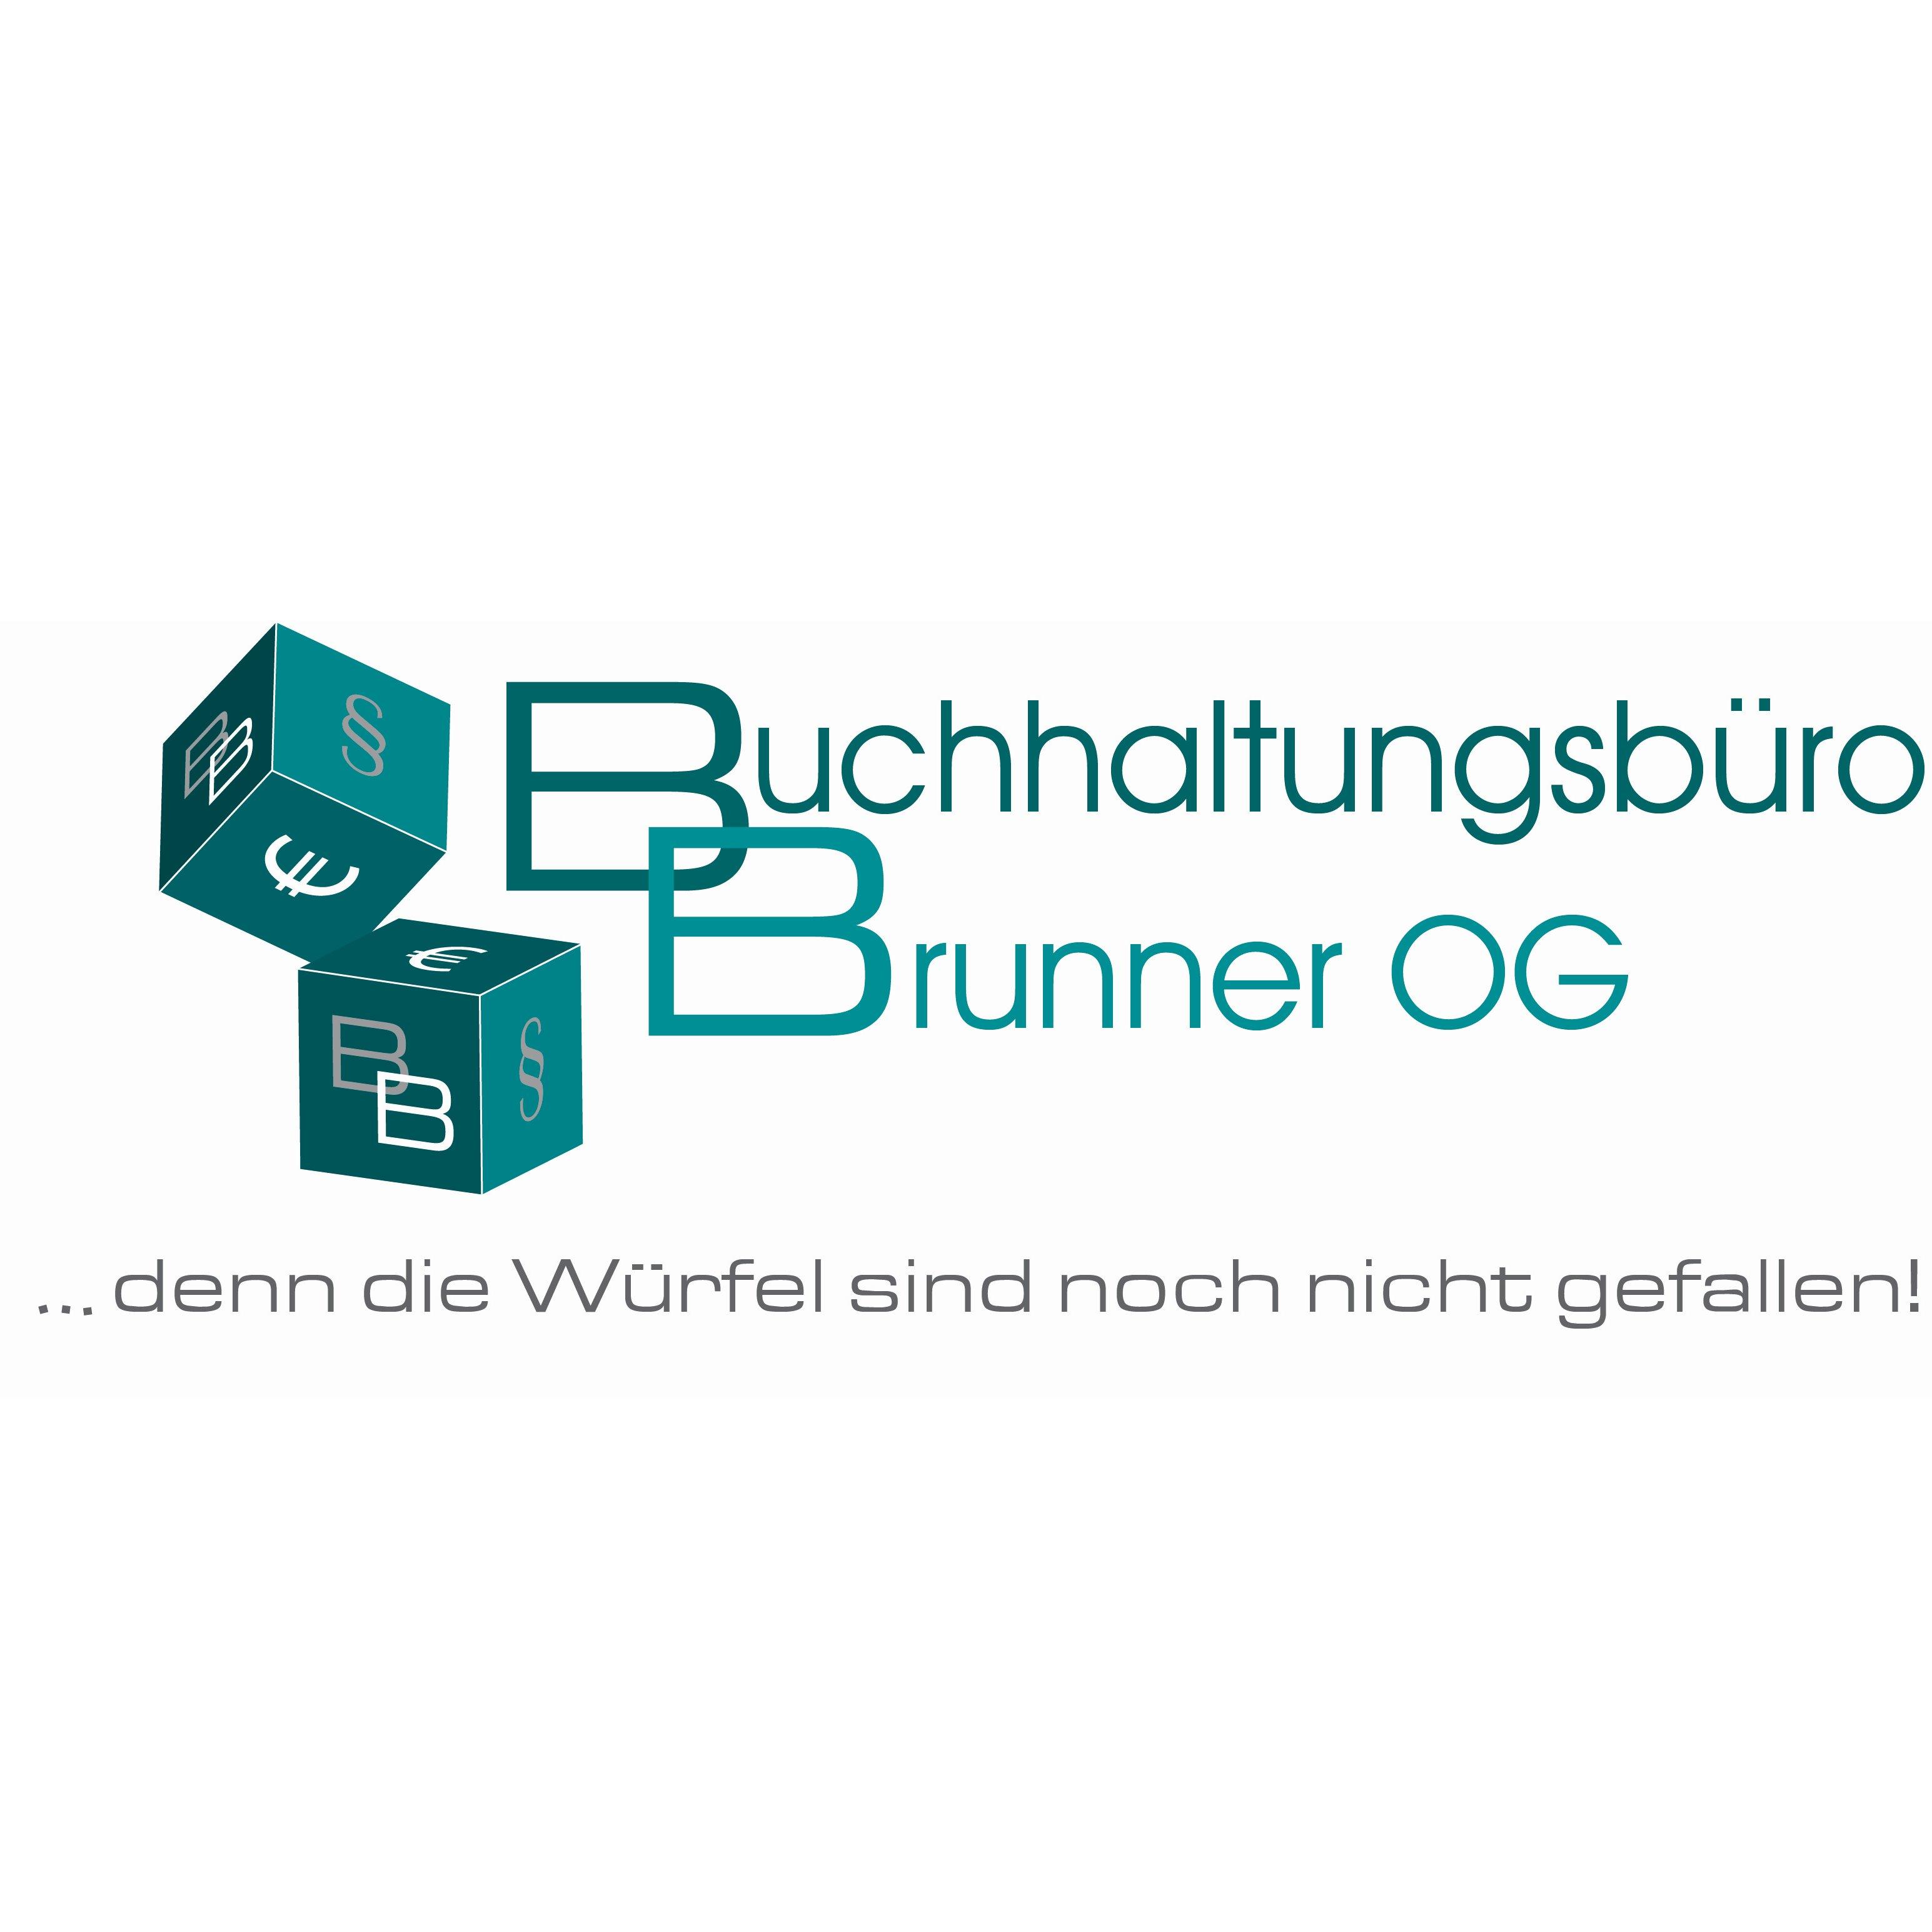 Buchhaltungsbüro Brunner OG Logo